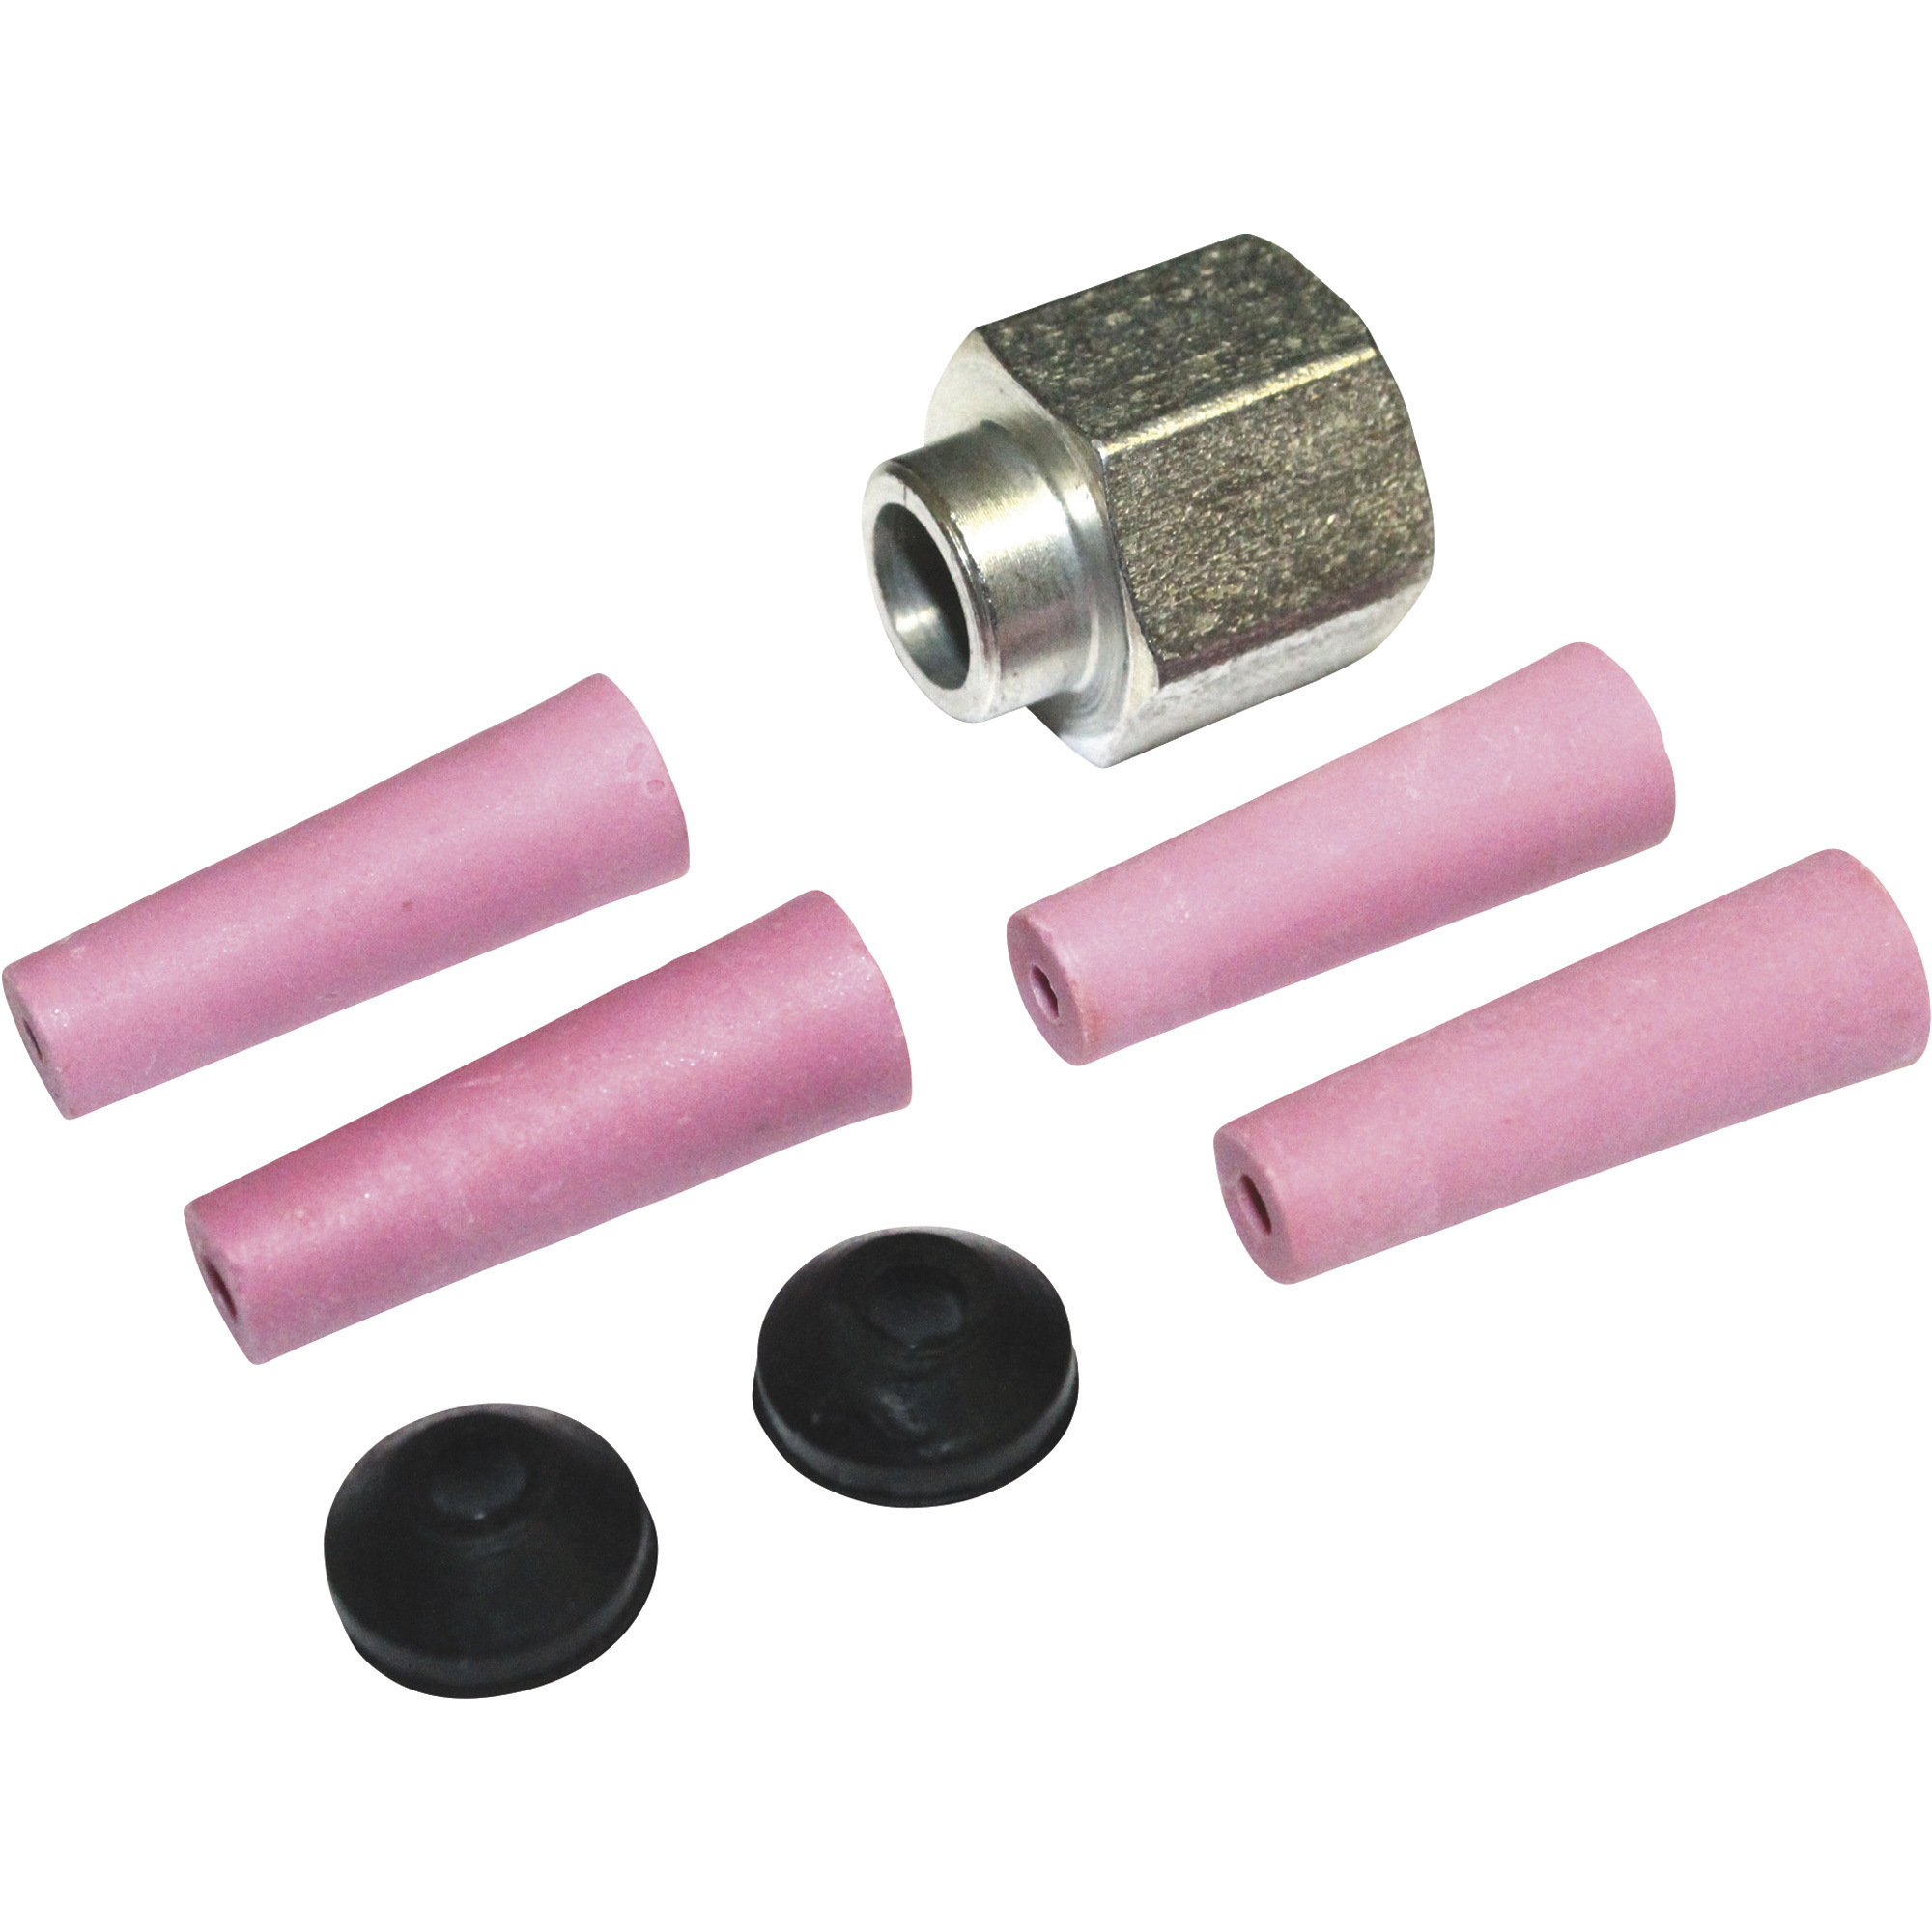 AllSource Abrasive Blaster Ceramic Pressure Nozzle Kit â 7-Piece Kit